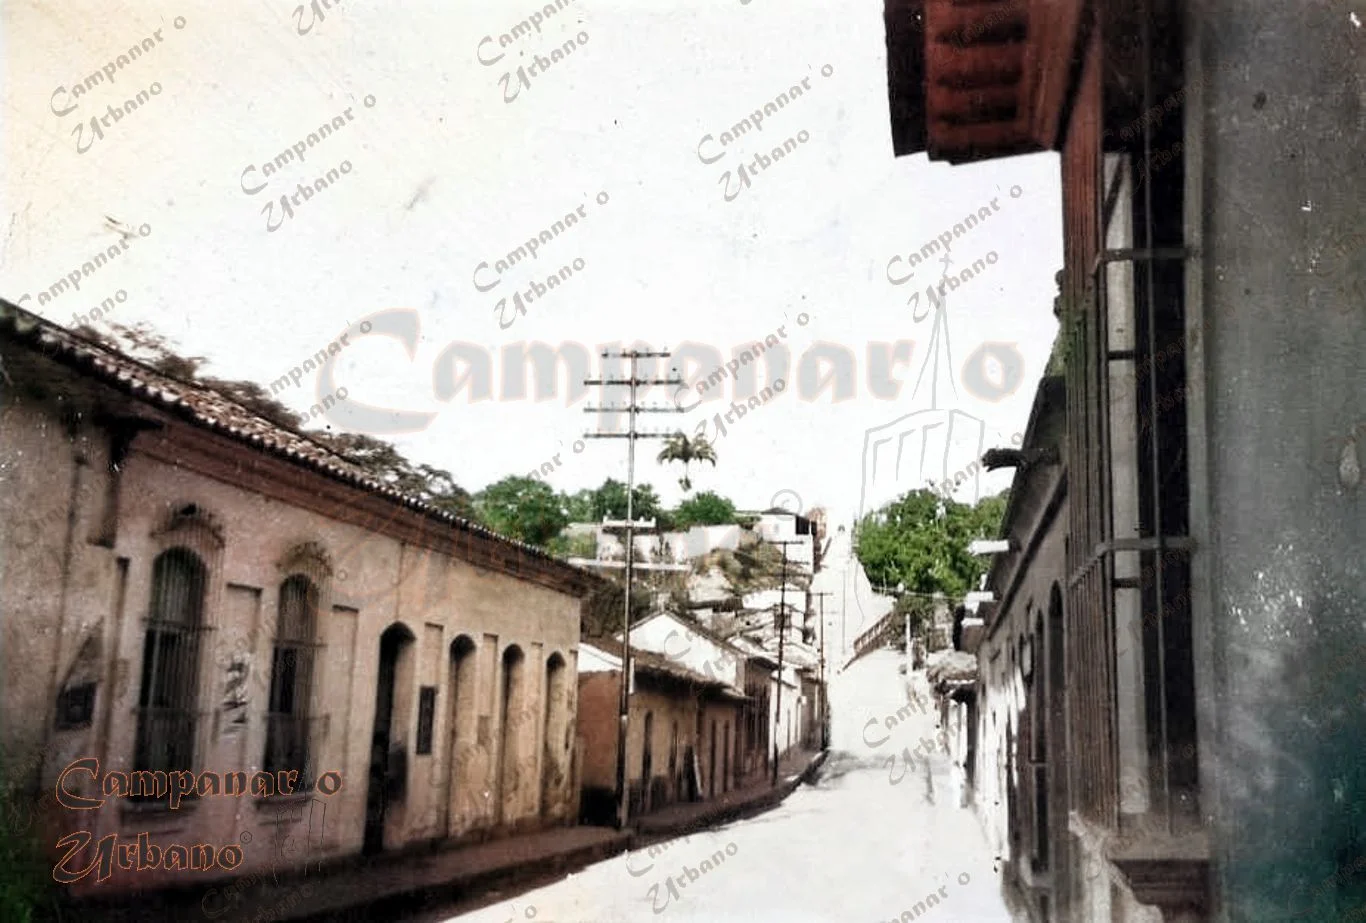 Calle Real de Guarenas, década 1930. Al fondo la intersección de las "prima" calles sur (Real) y norte (nombrada en 1940 como Régulo Fránquiz). Ambas bajadas son conocidas como Carabobo y Los Almendrones.